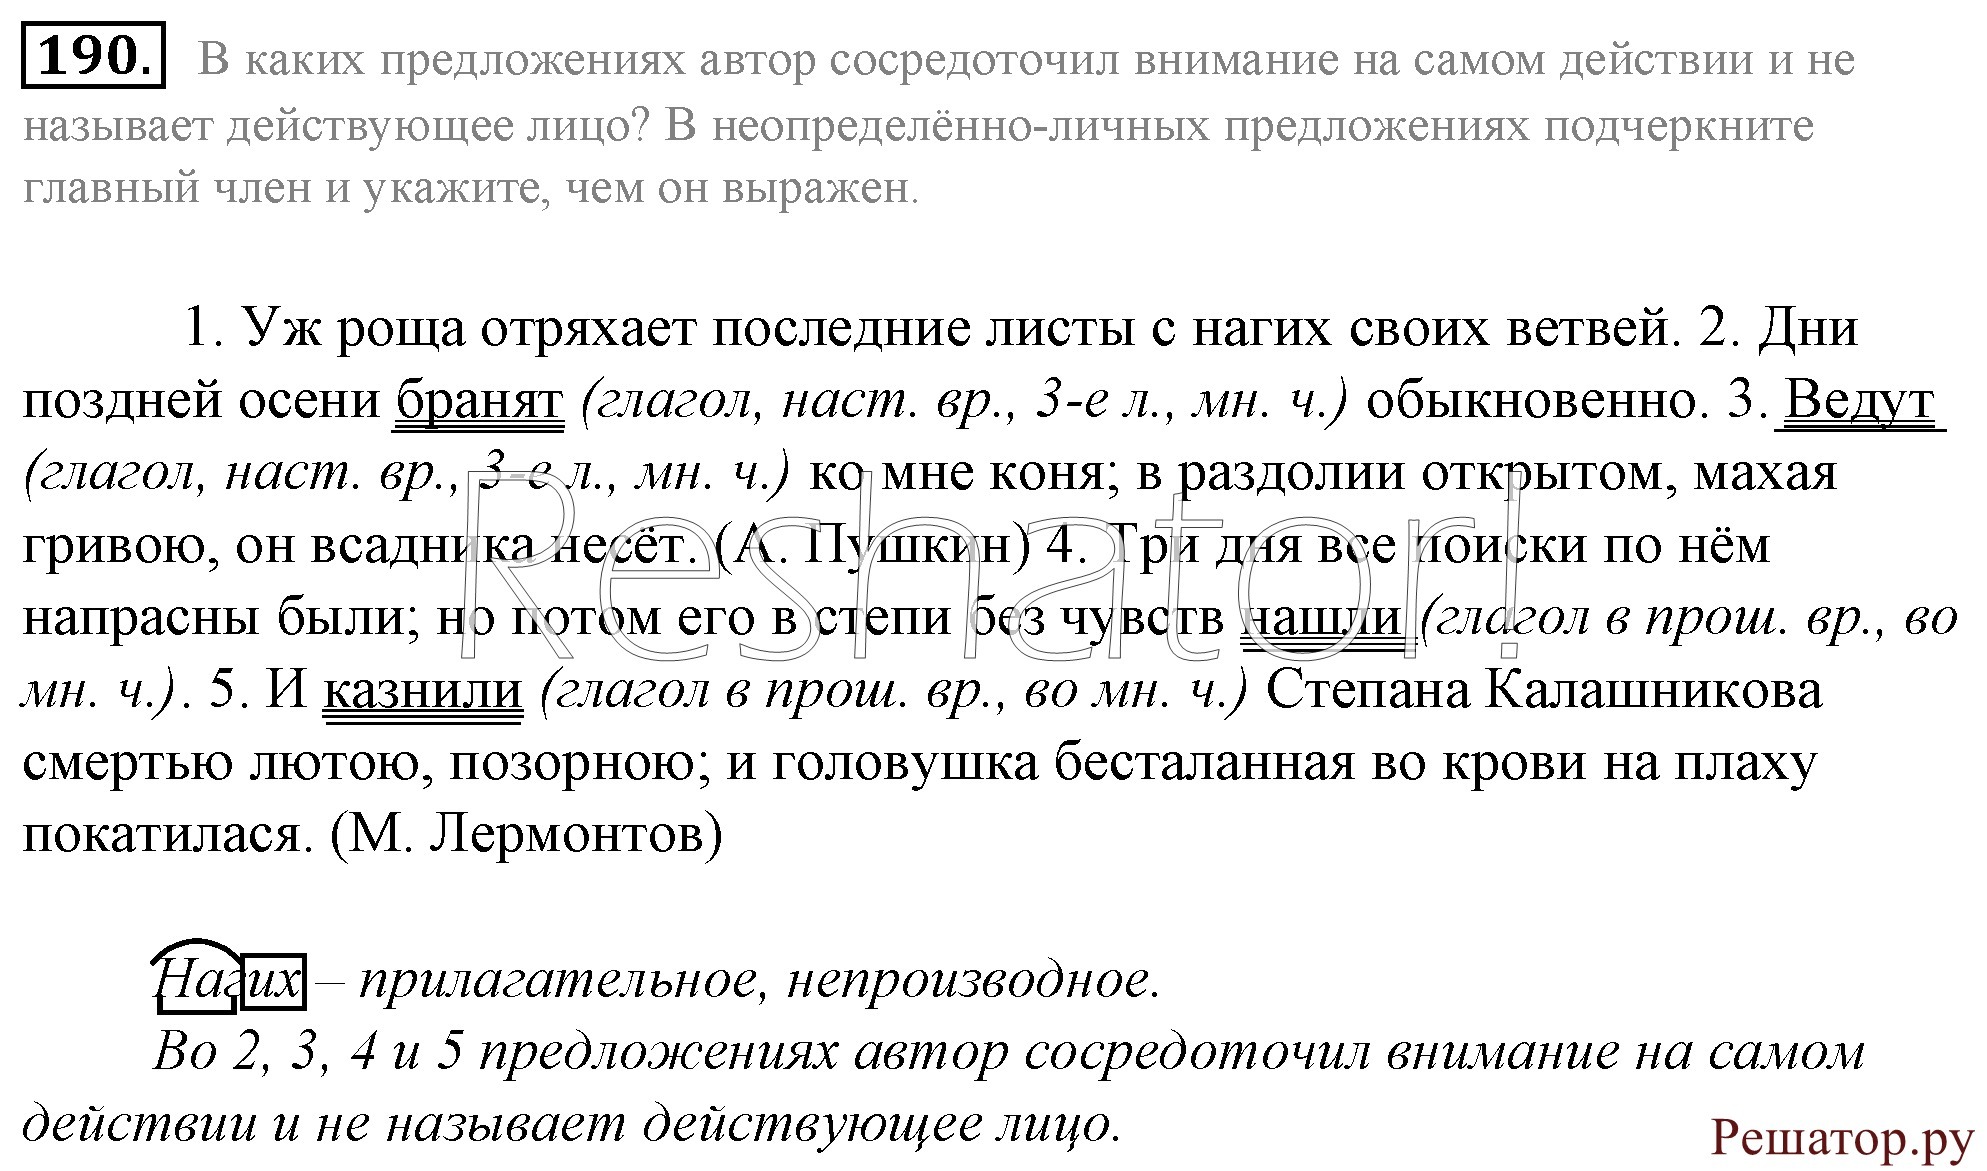 Русский язык 8 класс ладыженская упр 379